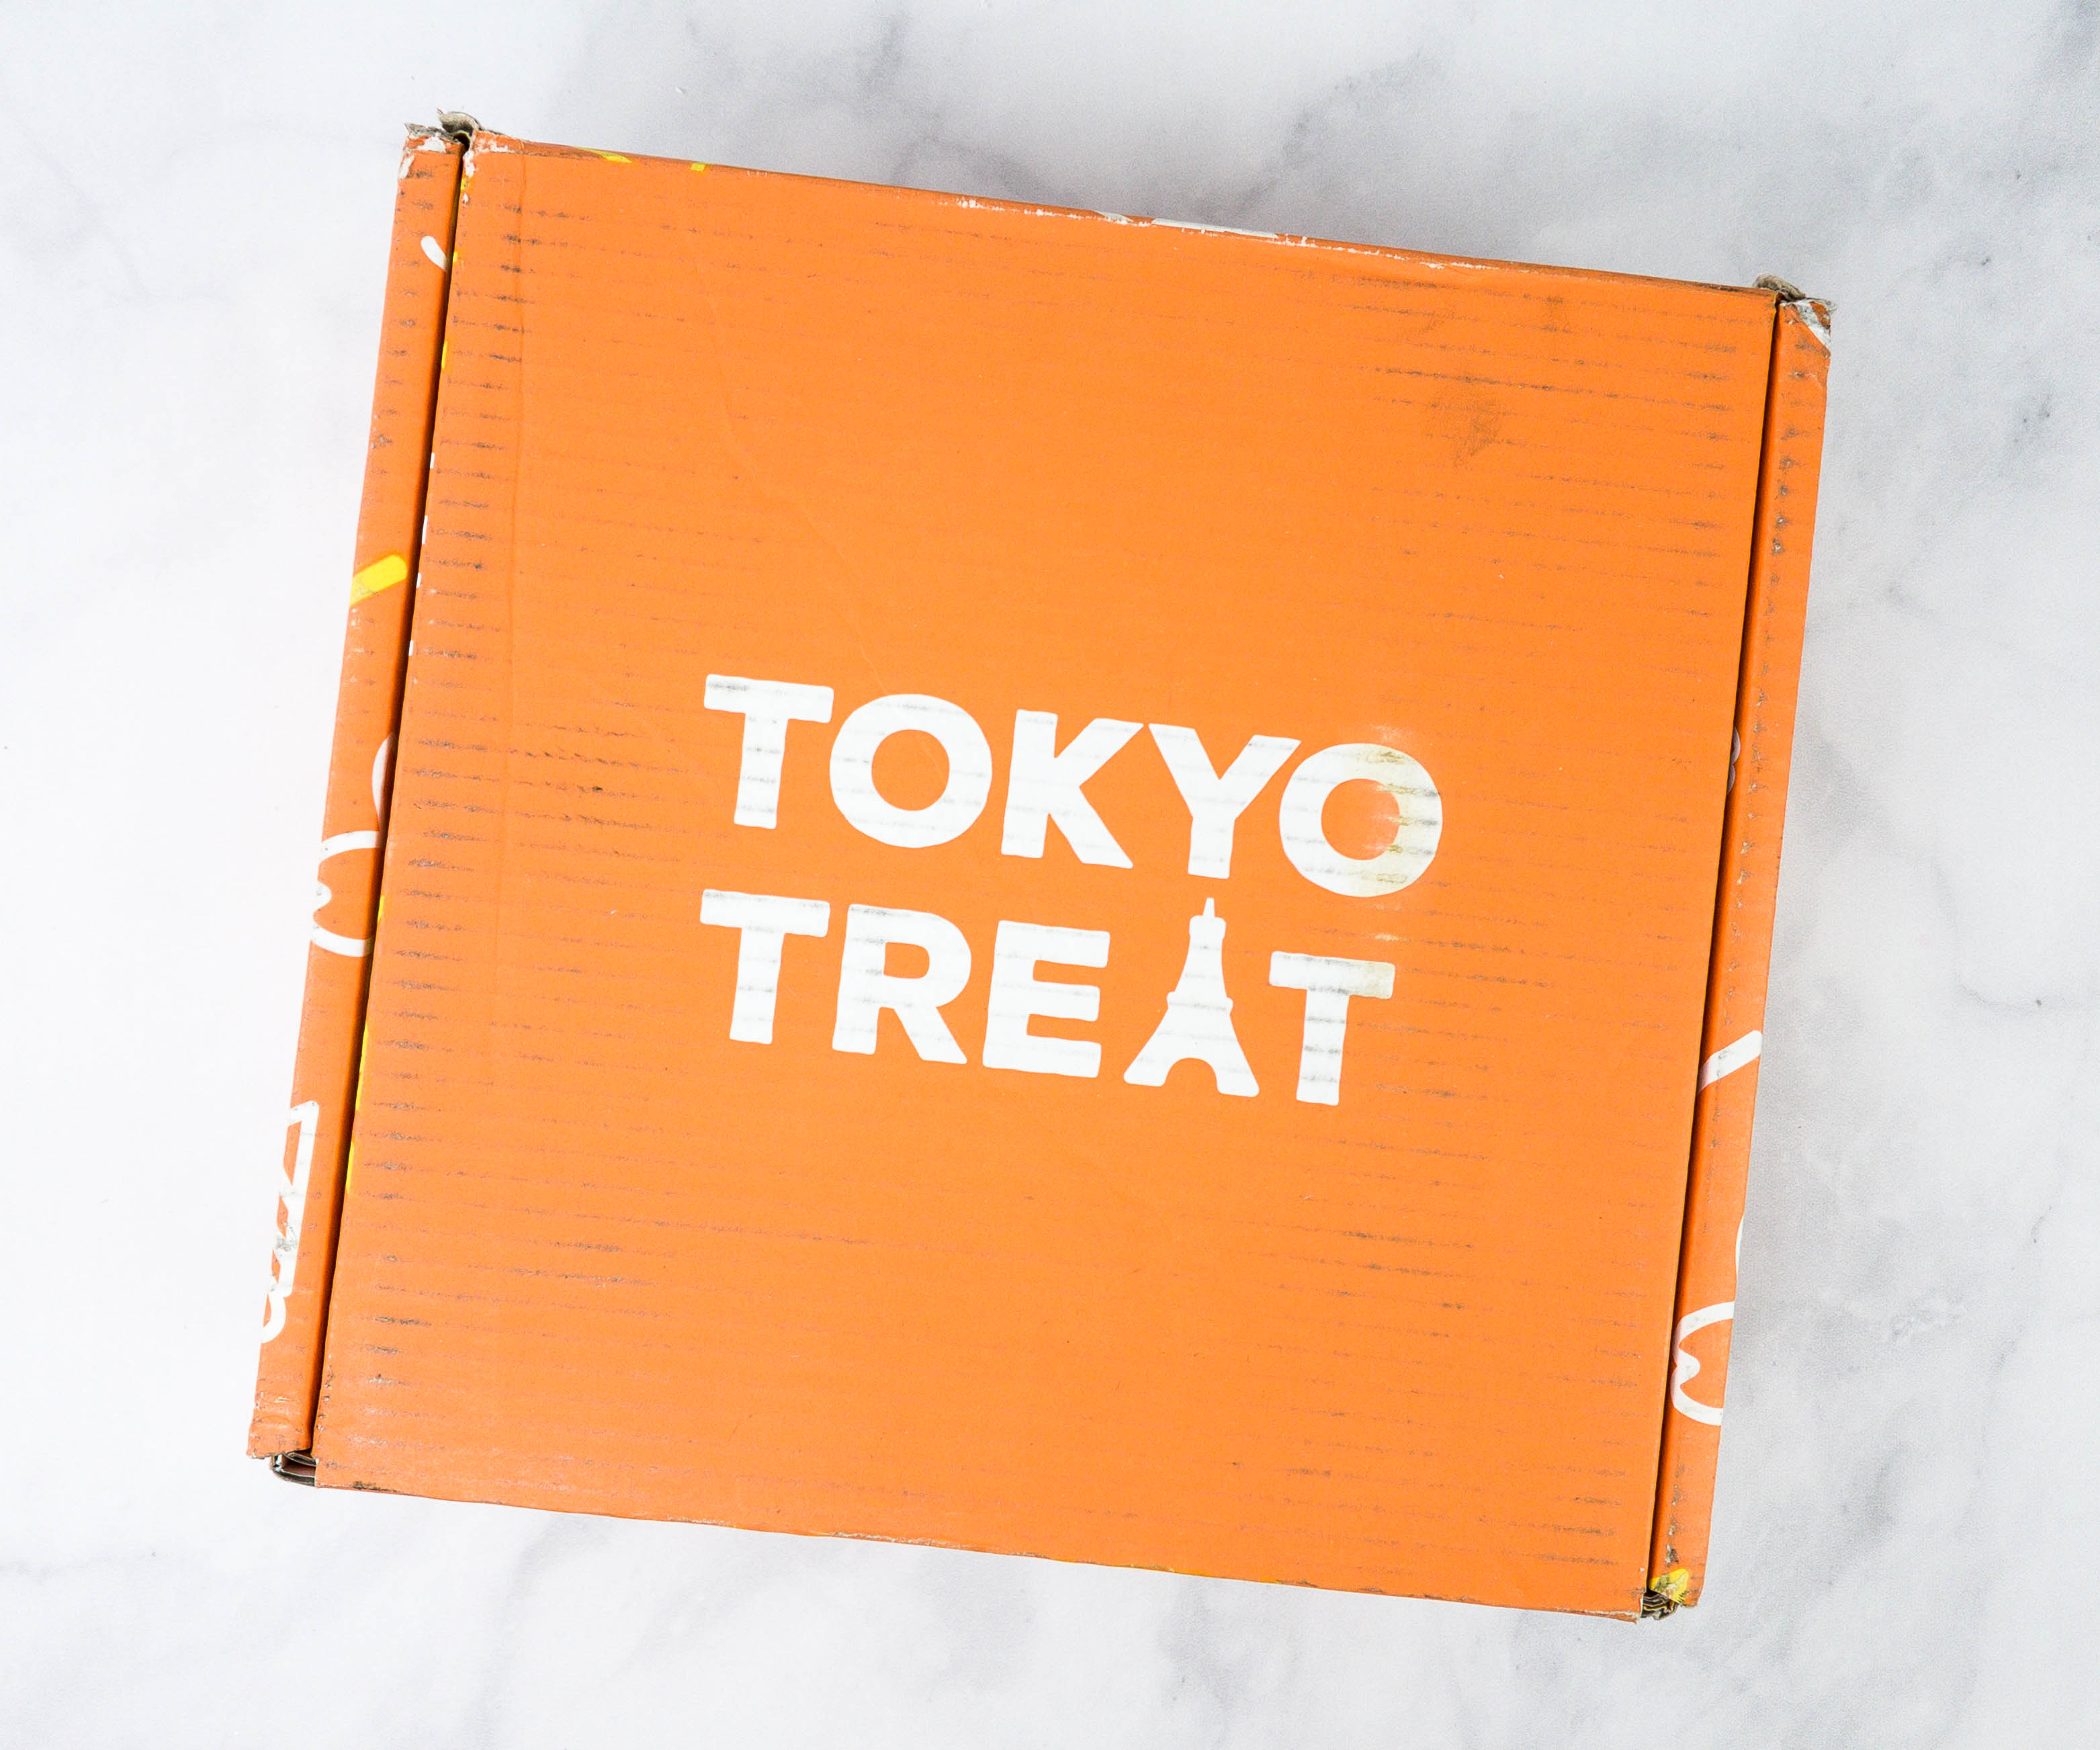 Tokyo Snack Box de février 2021 - Toutes les Box